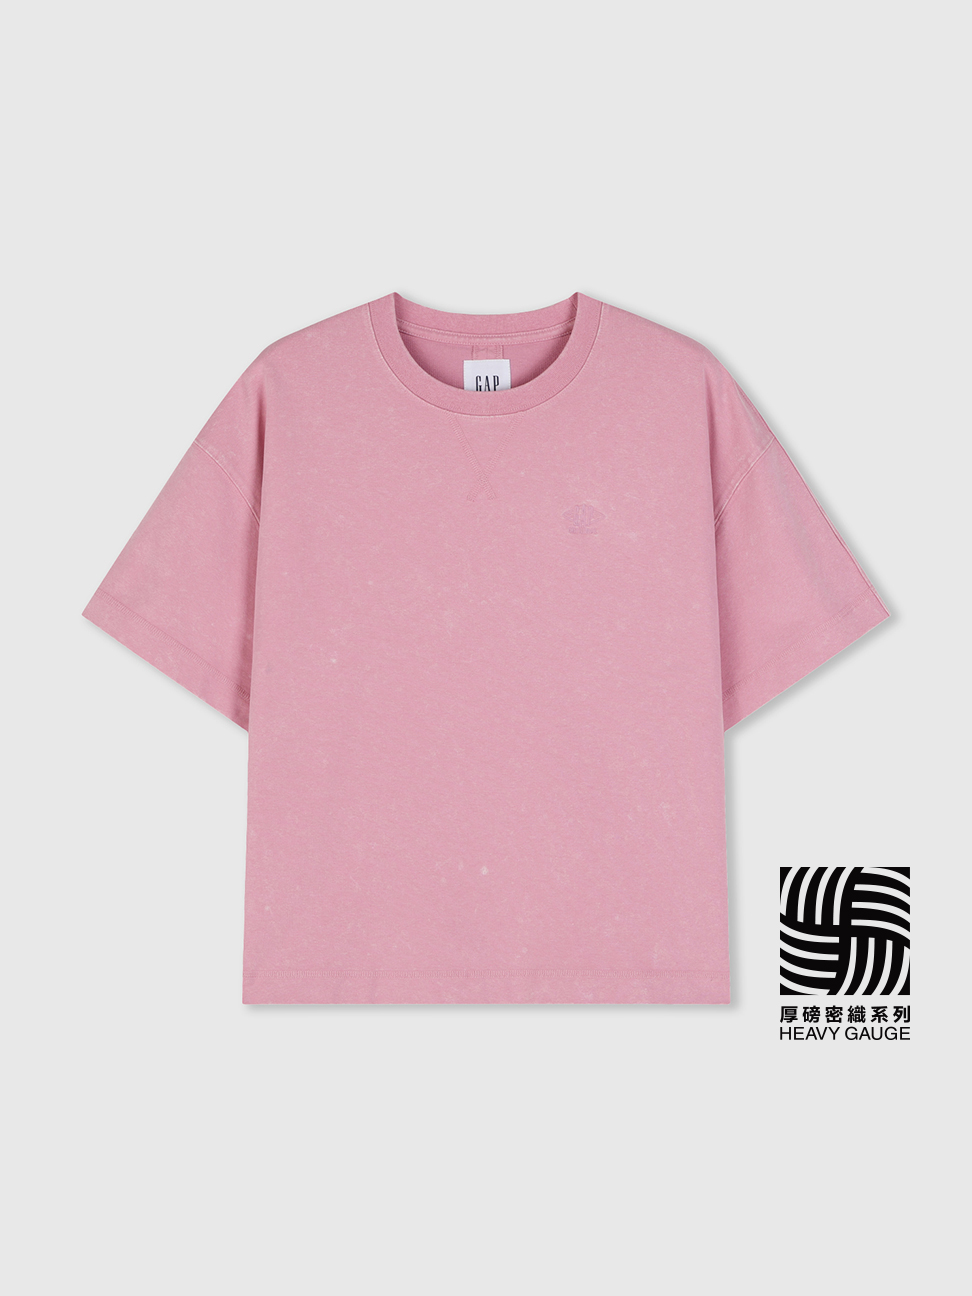 女裝|Logo圓領短袖T恤 復古水洗系列-粉色